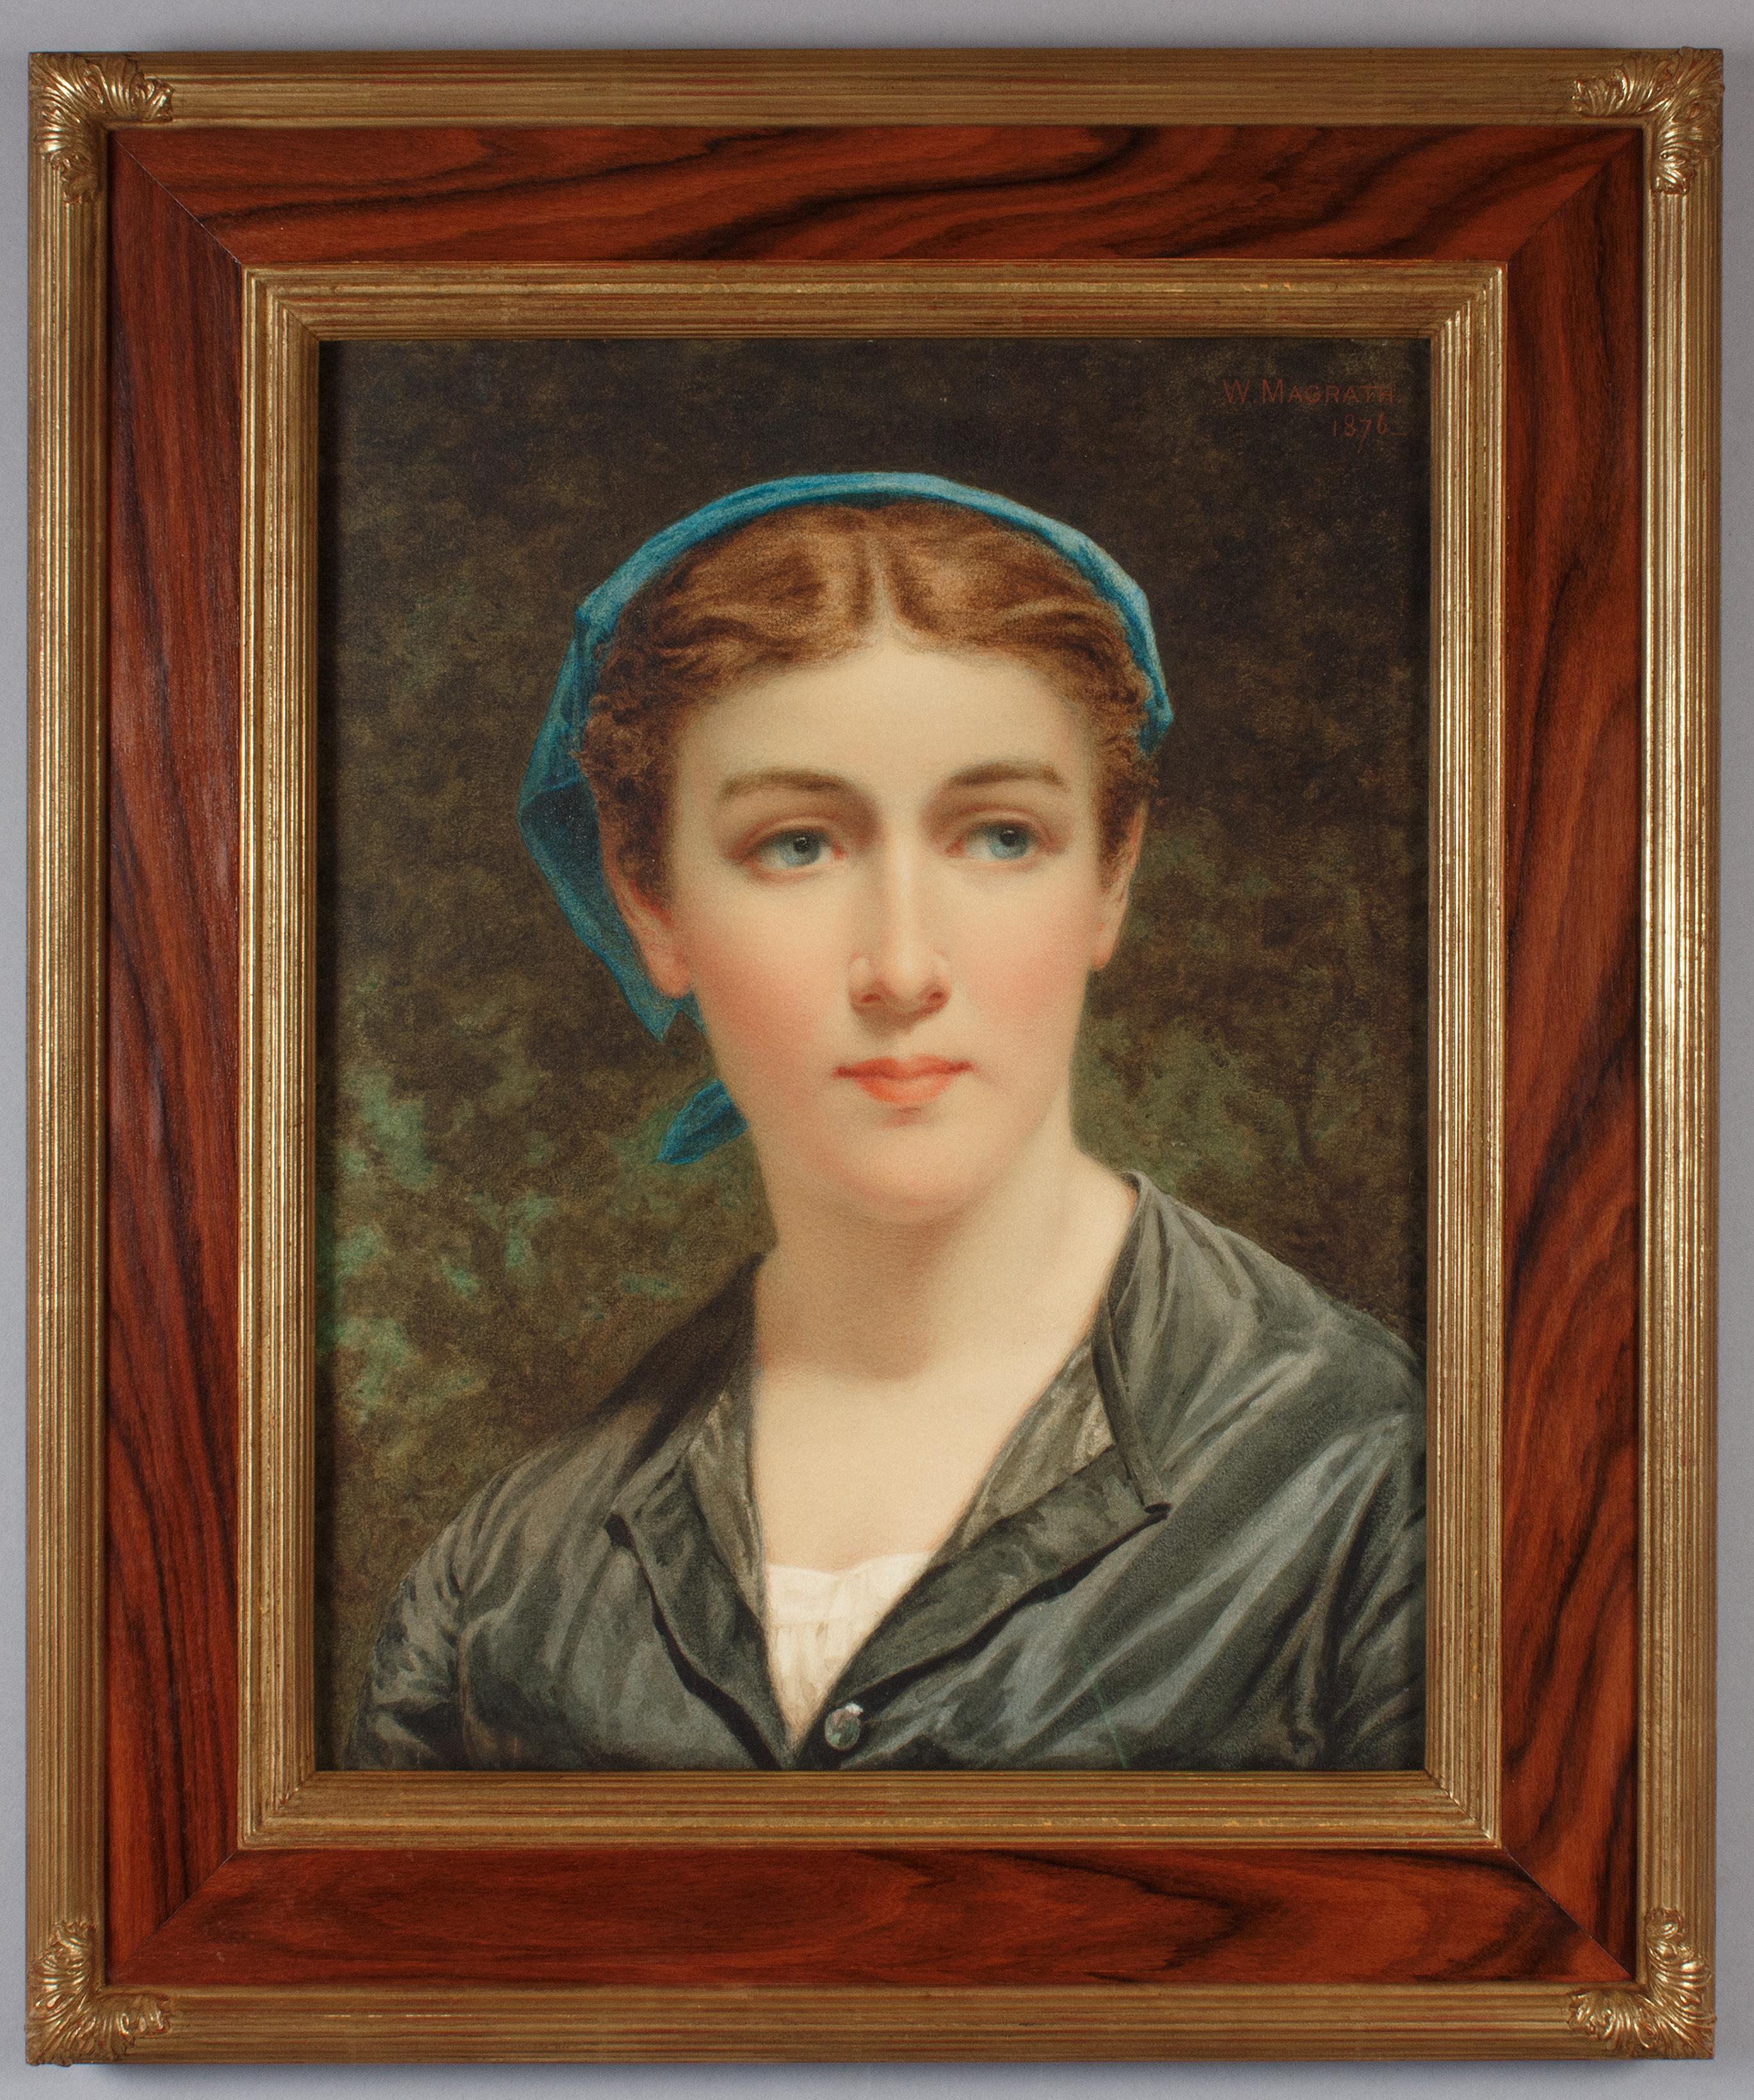 William Magrath Portrait – Woman with a Blue Kerchief: Aquarell der irischen Künstlerin Magrath